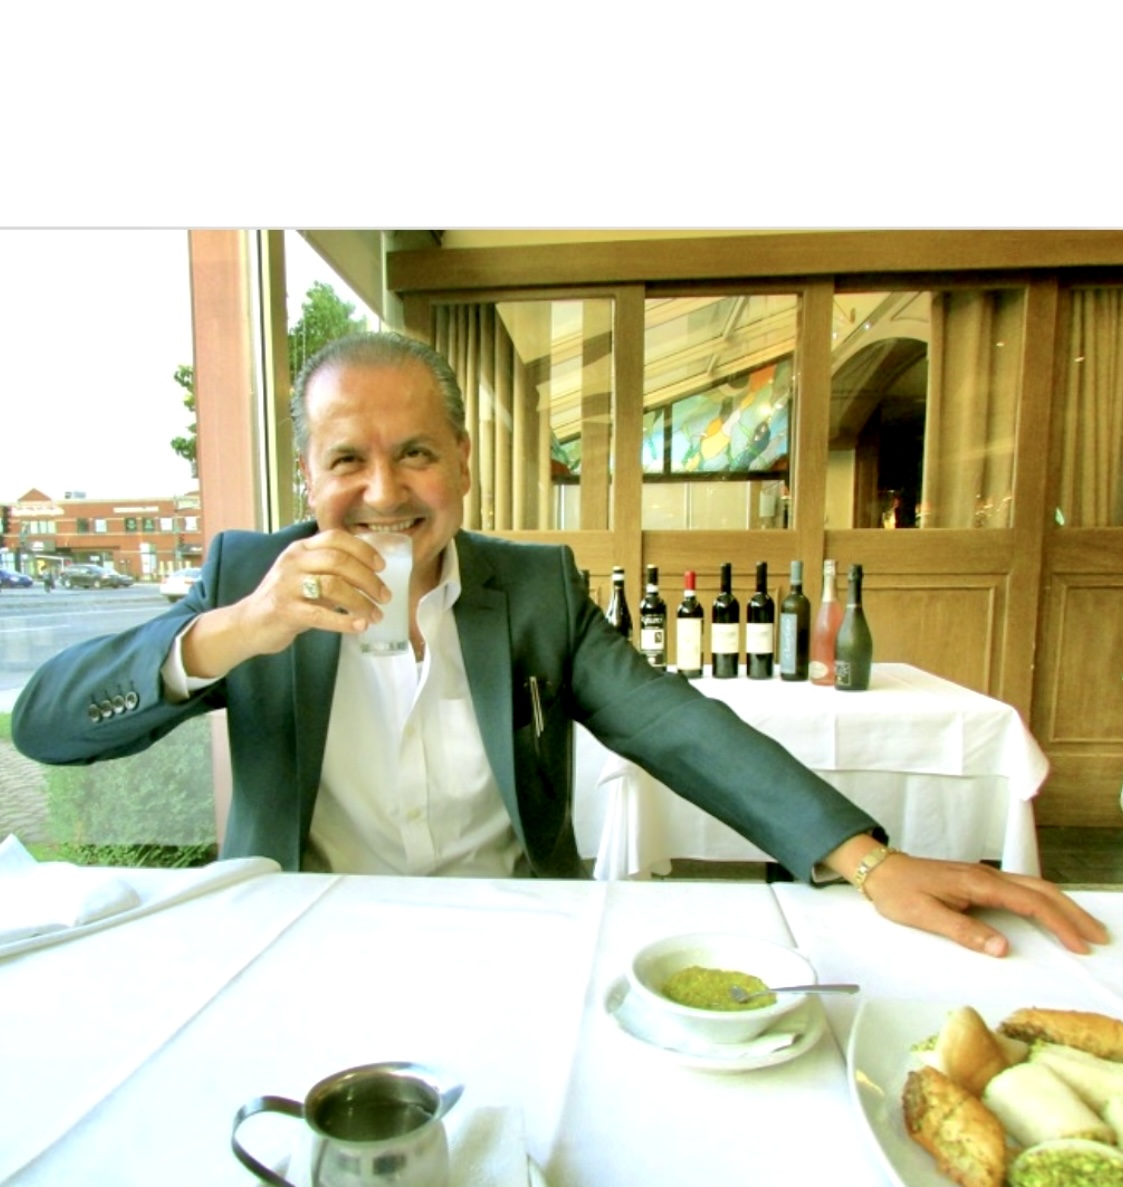 Un homme en costume savourant les saveurs de la cuisine libanaise assis à une table.